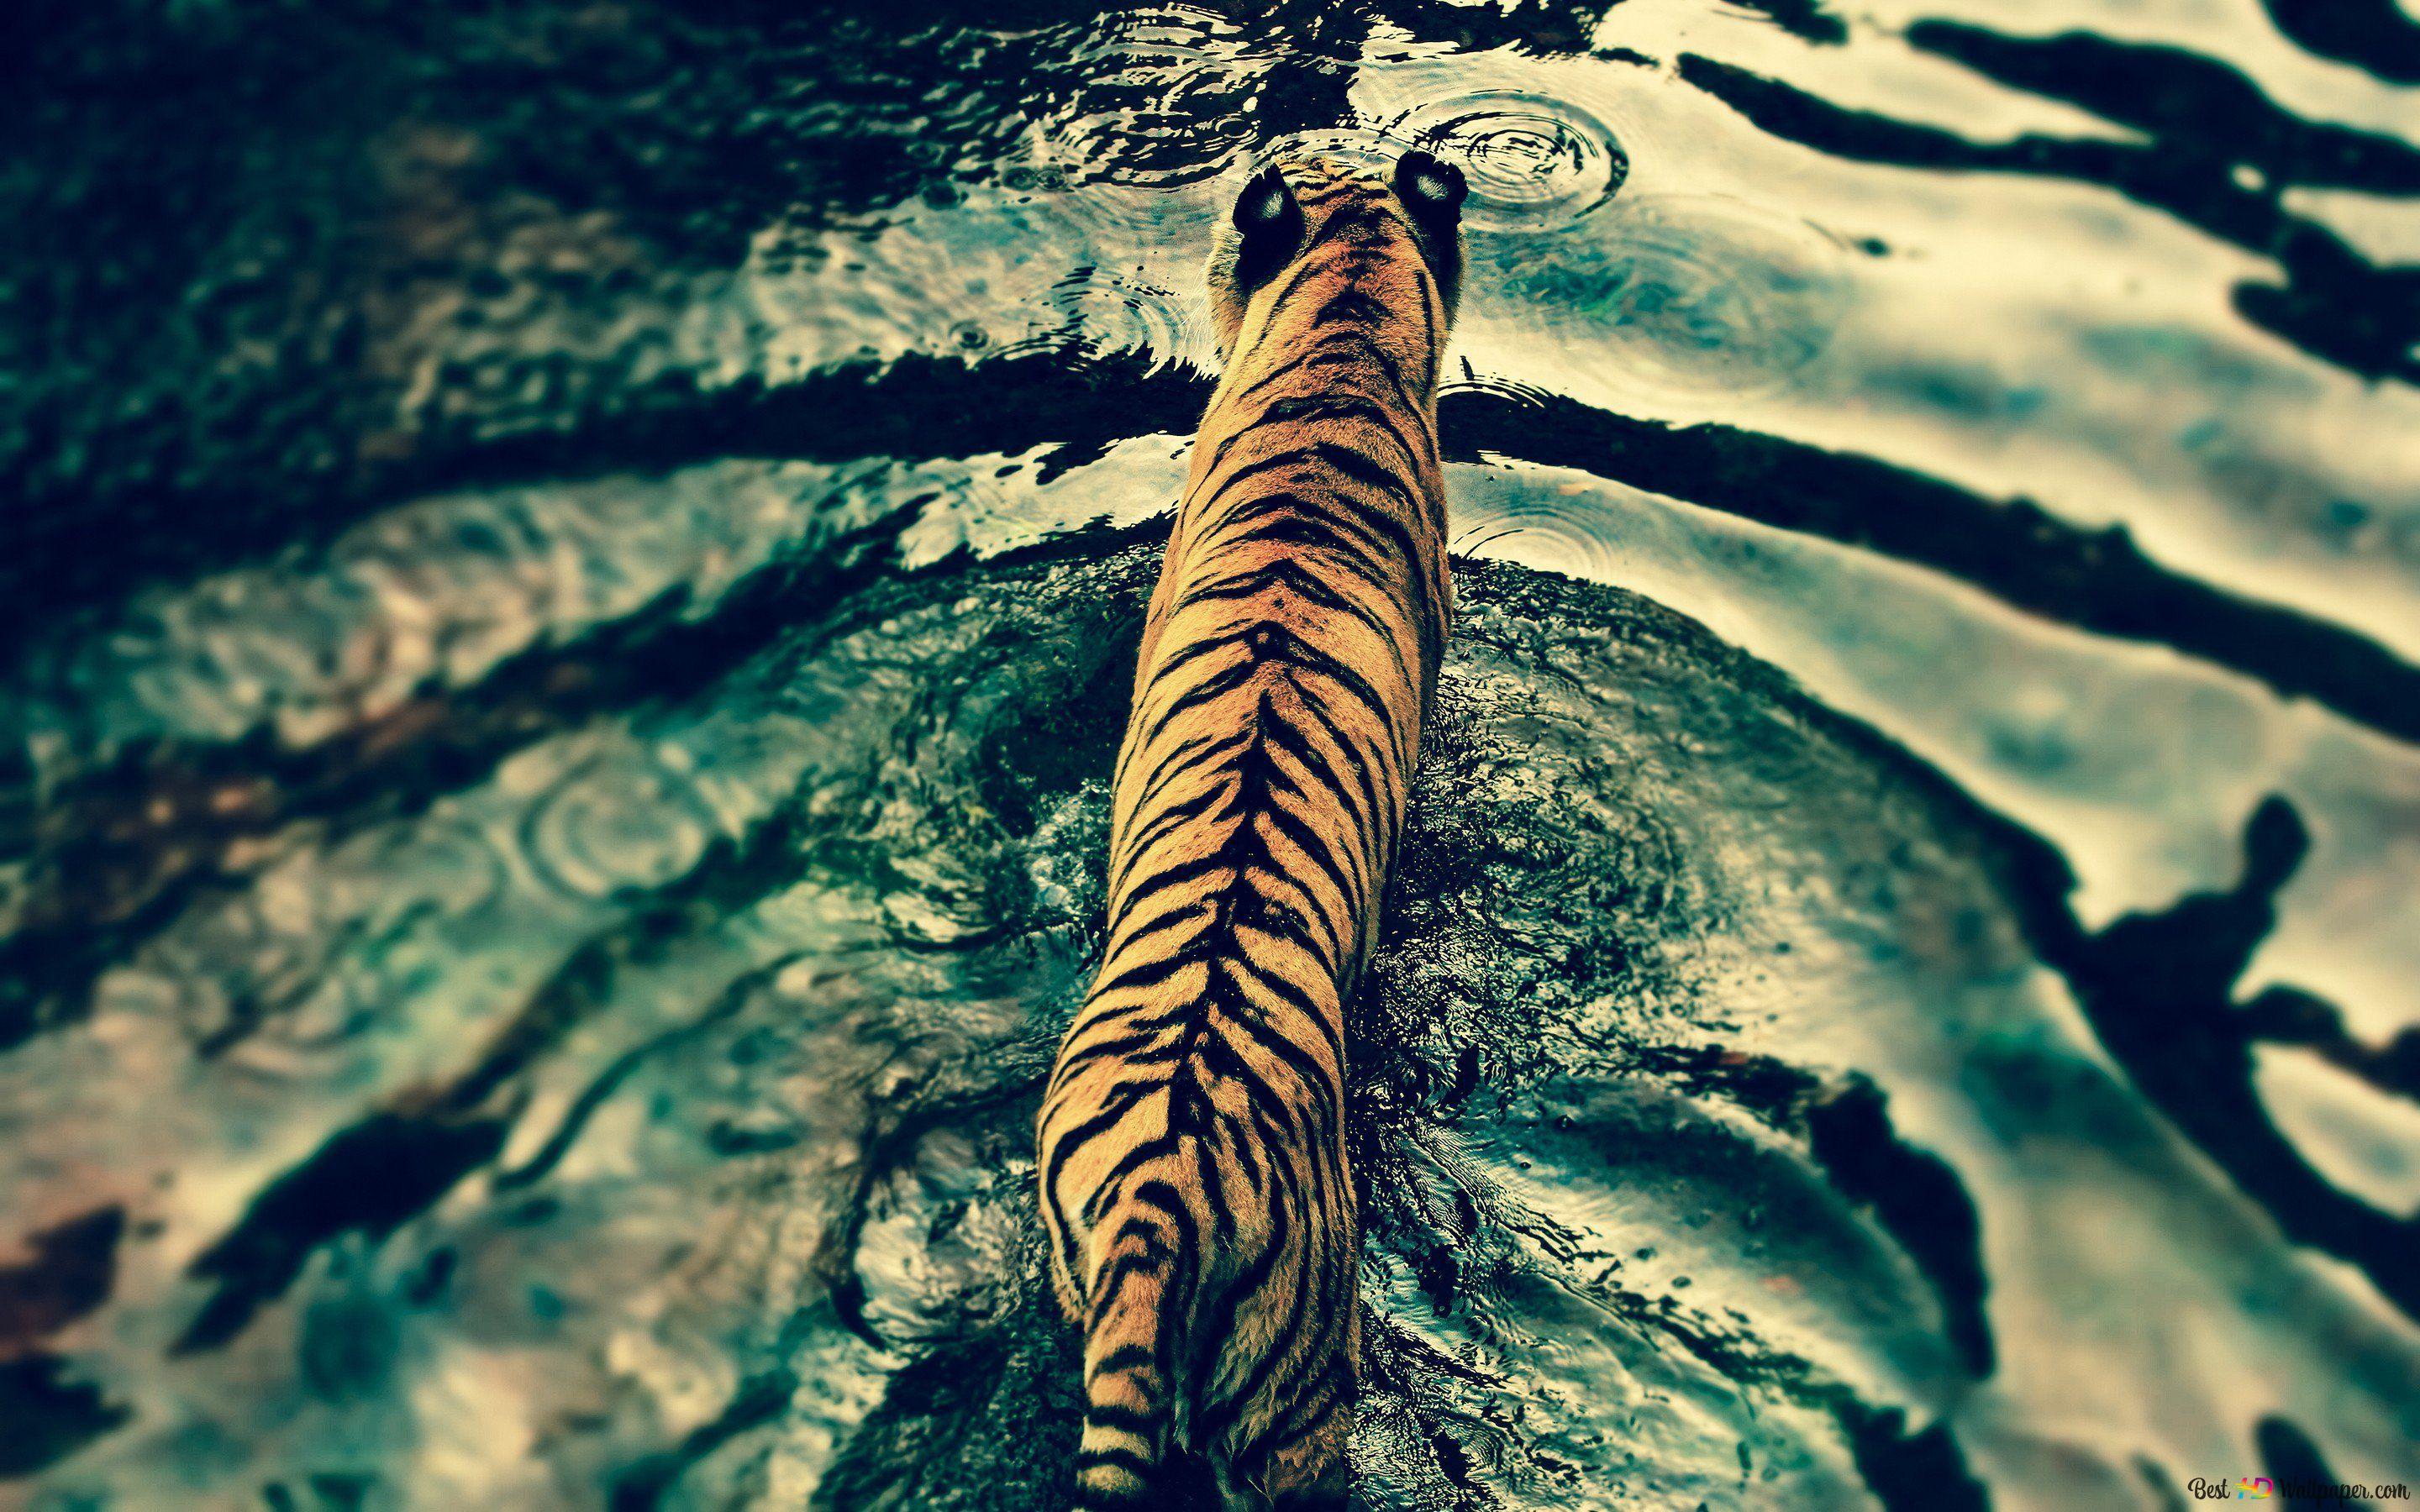  Die Schönsten Hintergrundbild 2880x1800. Der Tiger mit seinem gemusterten Fell, eines der schönsten Tiere der wilden Natur, bewegt sich im Wasser 2K Hintergrundbild herunterladen